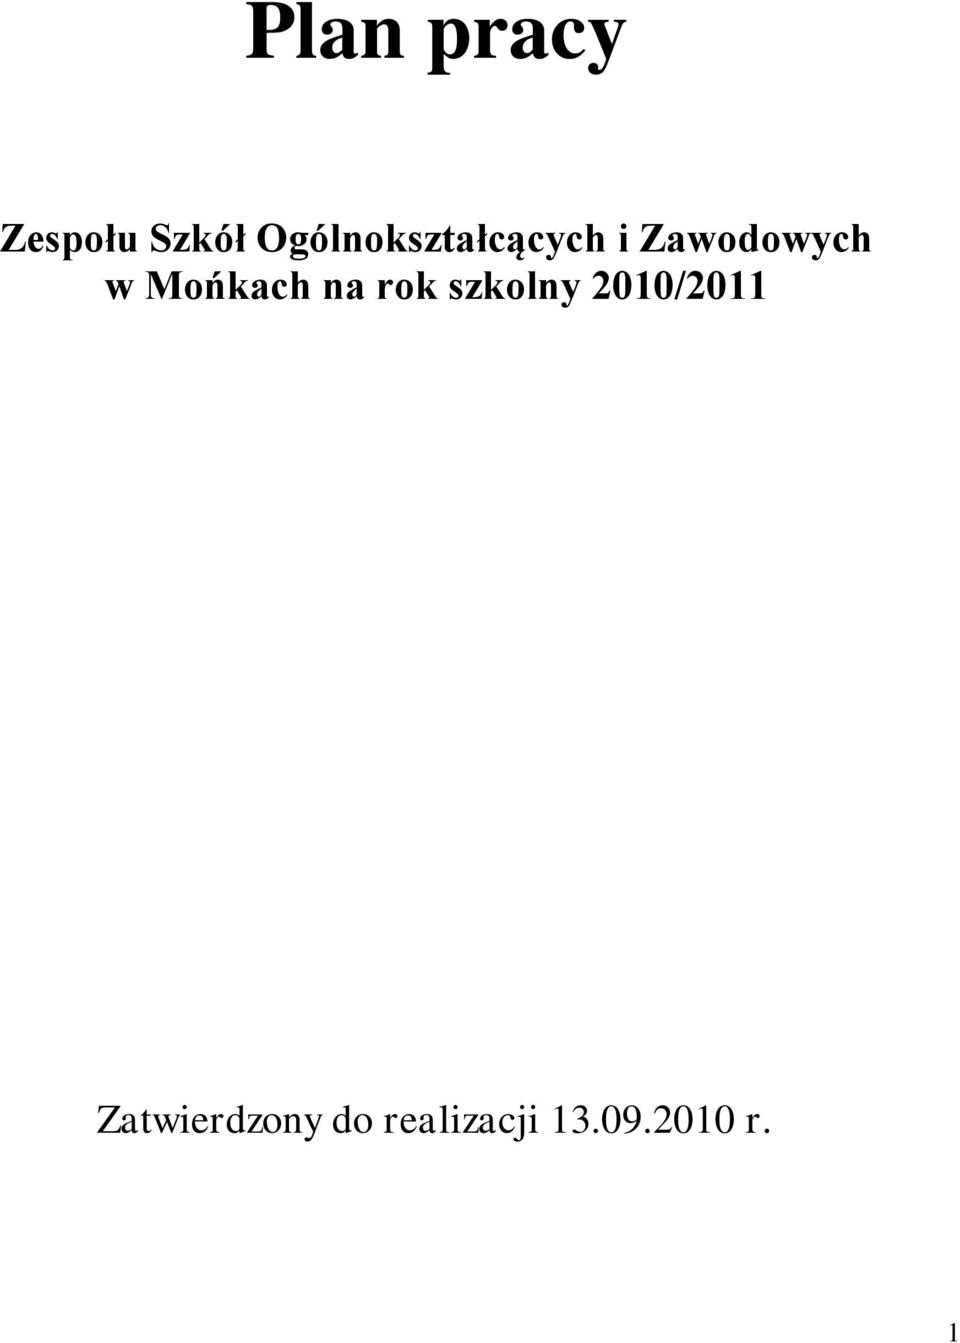 Mońkach na rok szkolny 2010/2011